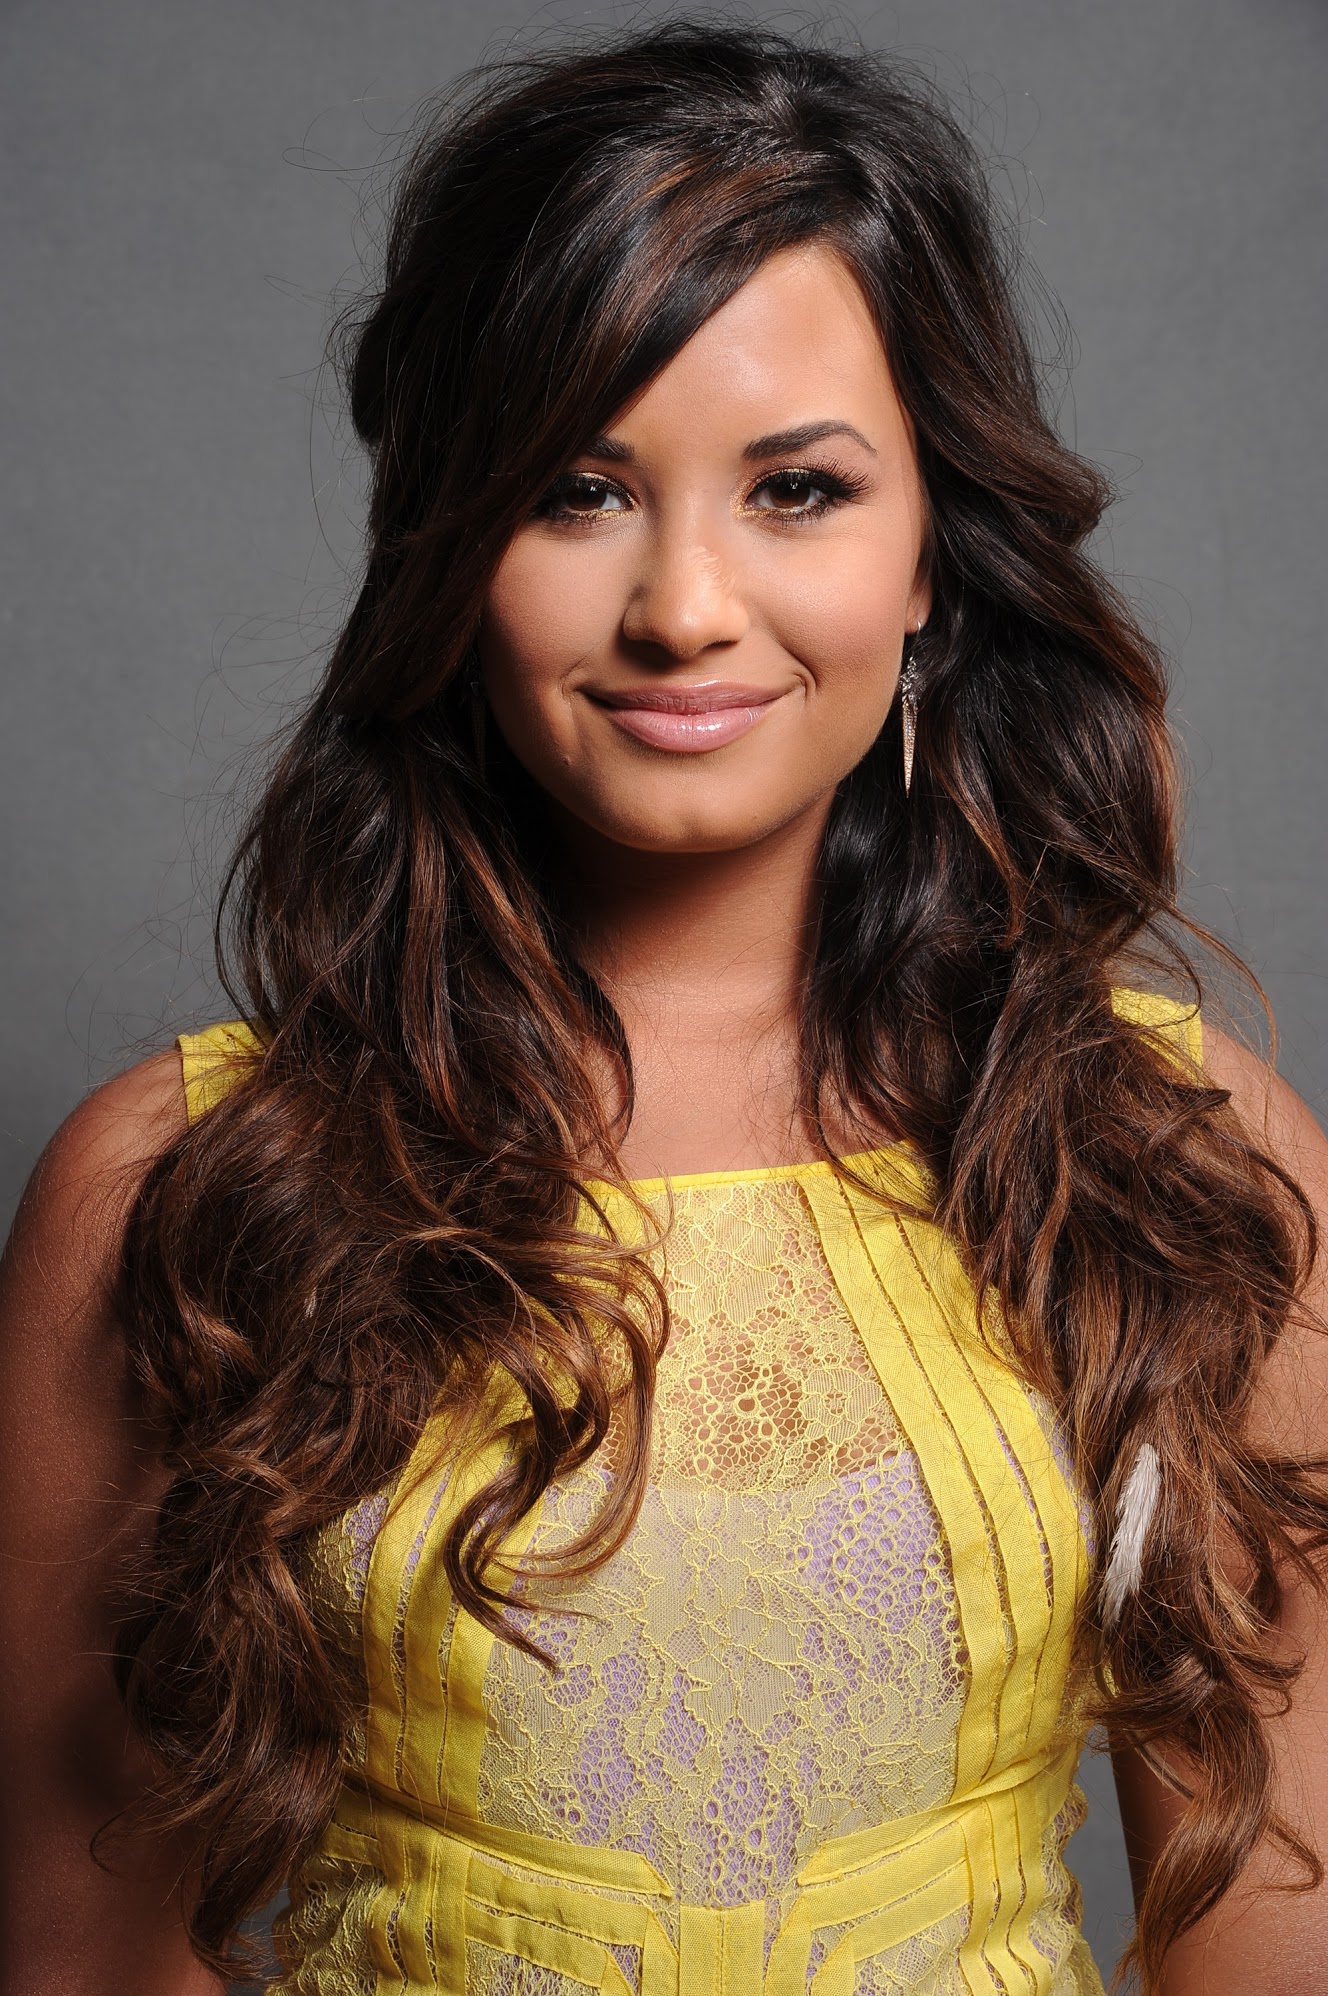 Demi Lovato HD wallpapers, Desktop wallpaper - most viewed